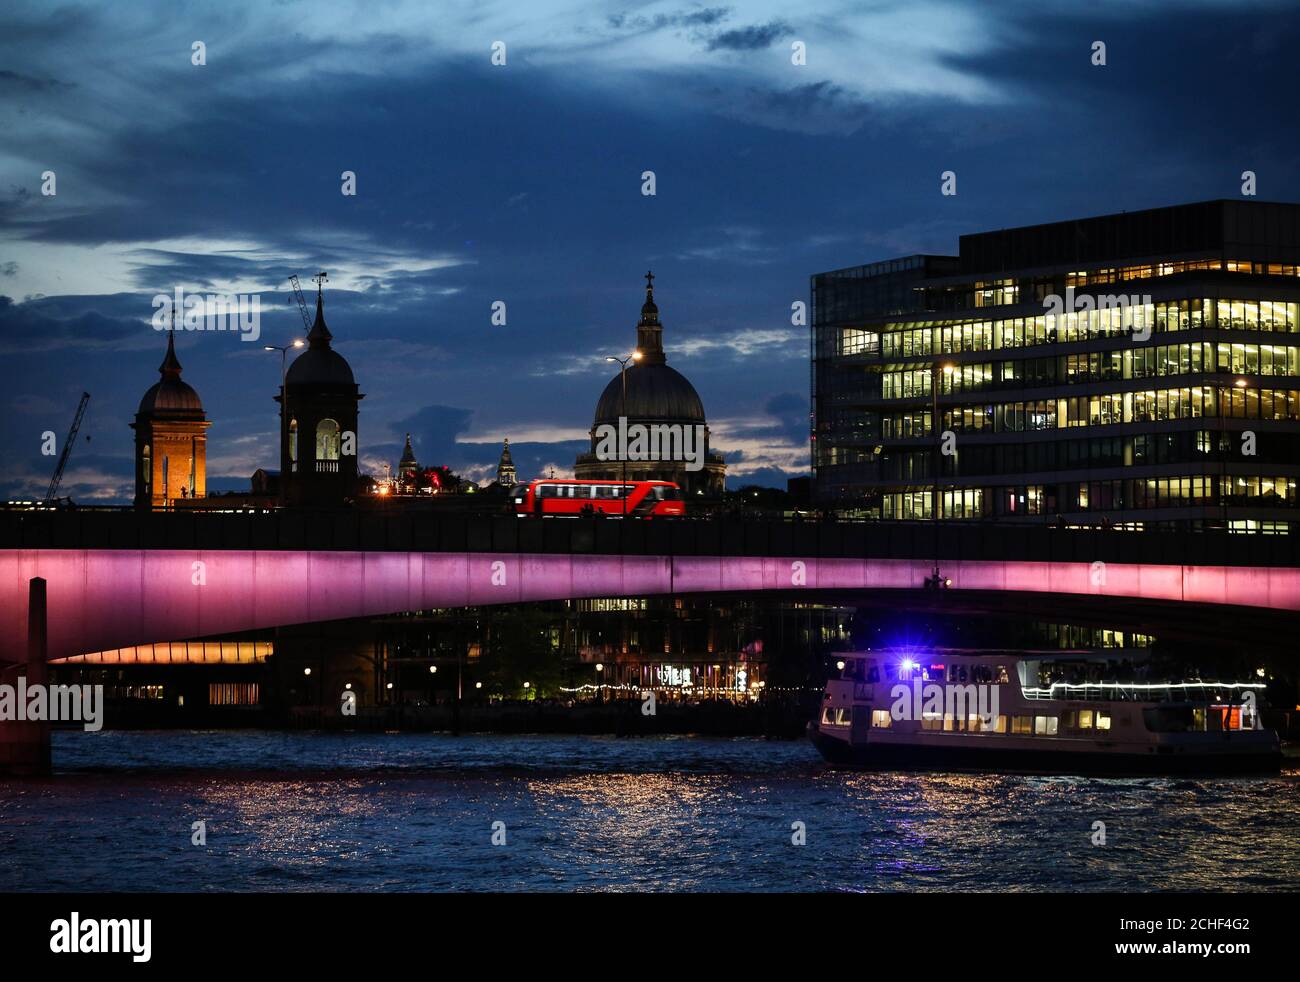 SOTTOPOSTO A EMBARGO AL 2200 MERCOLEDÌ 17 LUGLIO USO EDITORIALE SOLO UNA visione generale di London Bridge, Che è uno dei quattro ponti che sono stati trasformati per lanciare la prima fase del fiume illuminato, una nuova e ambiziosa commissione d'arte pubblica per Londra che alla fine vedrà fino a 15 ponti illuminati lungo il Tamigi. PREMERE ASSOCIAZIONE. Data di emissione: Mercoledì 17 luglio 2019. Concepito dall'artista americano Leo Villareal e dalla pratica architettonica britannica Lifschutz Davidson Sandilands, Illuminated River è un'iniziativa filantropica sostenuta dal Sindaco di Londra e portata avanti dall'illuminato Foto Stock